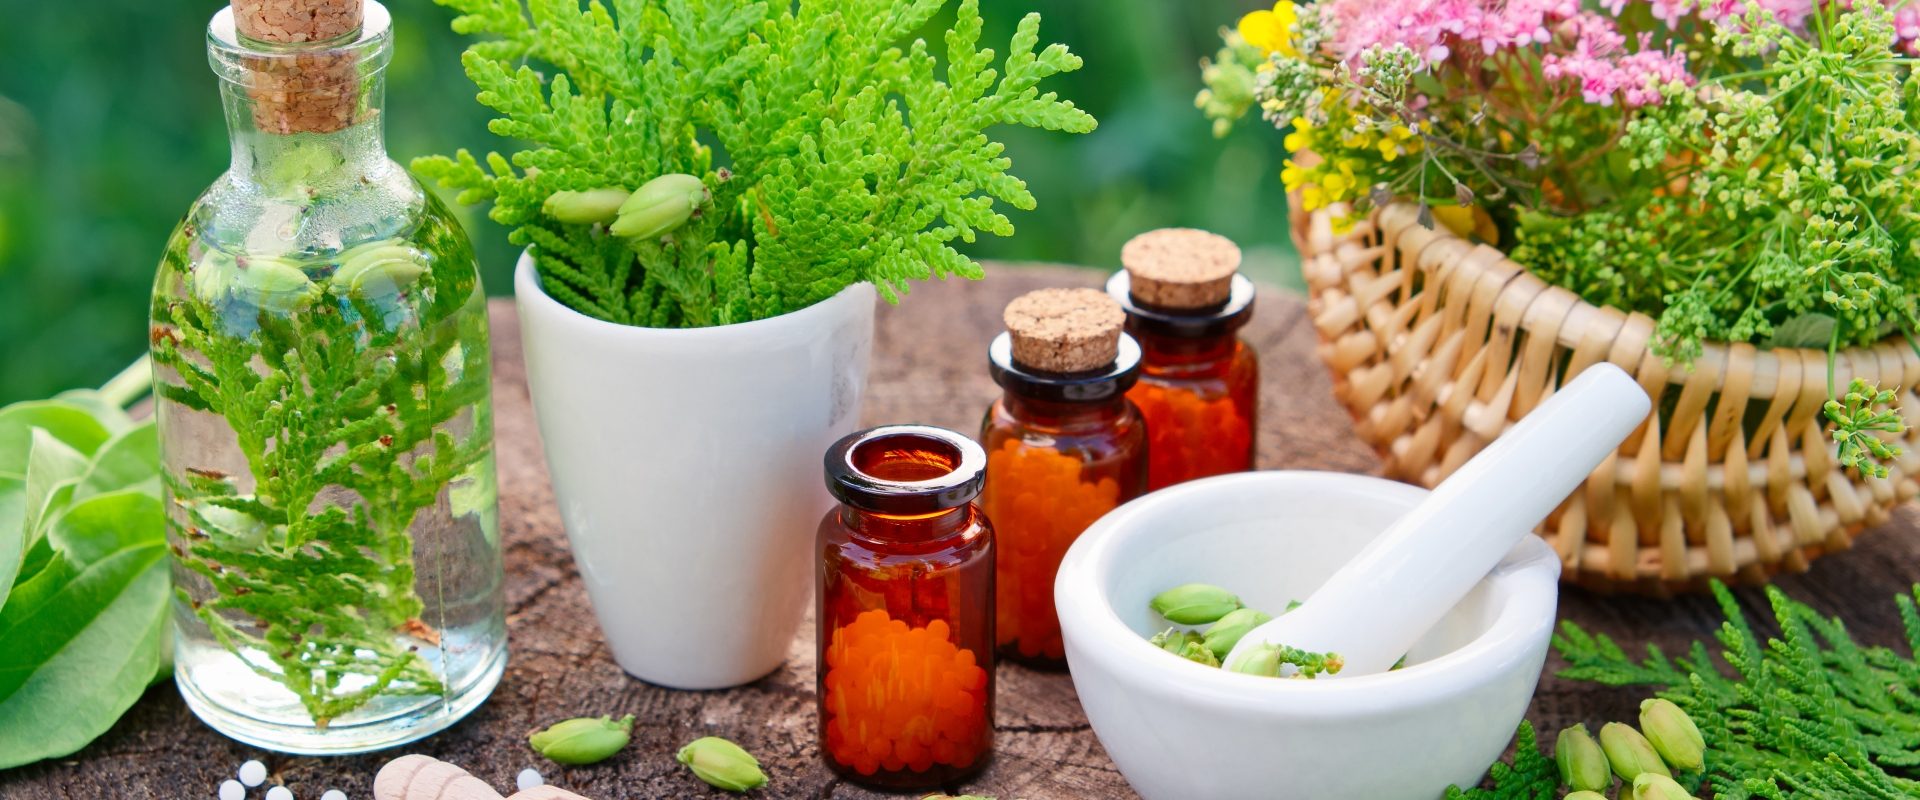 Naturalne sposoby na wirusy - leki roślinne i leki homeopatyczne. Fiolki z lekami homeopatycznymi i zielone rośliny oraz kwiaty w koszyku i wazonikach stoją na drewnianym stole w ogrodzie.